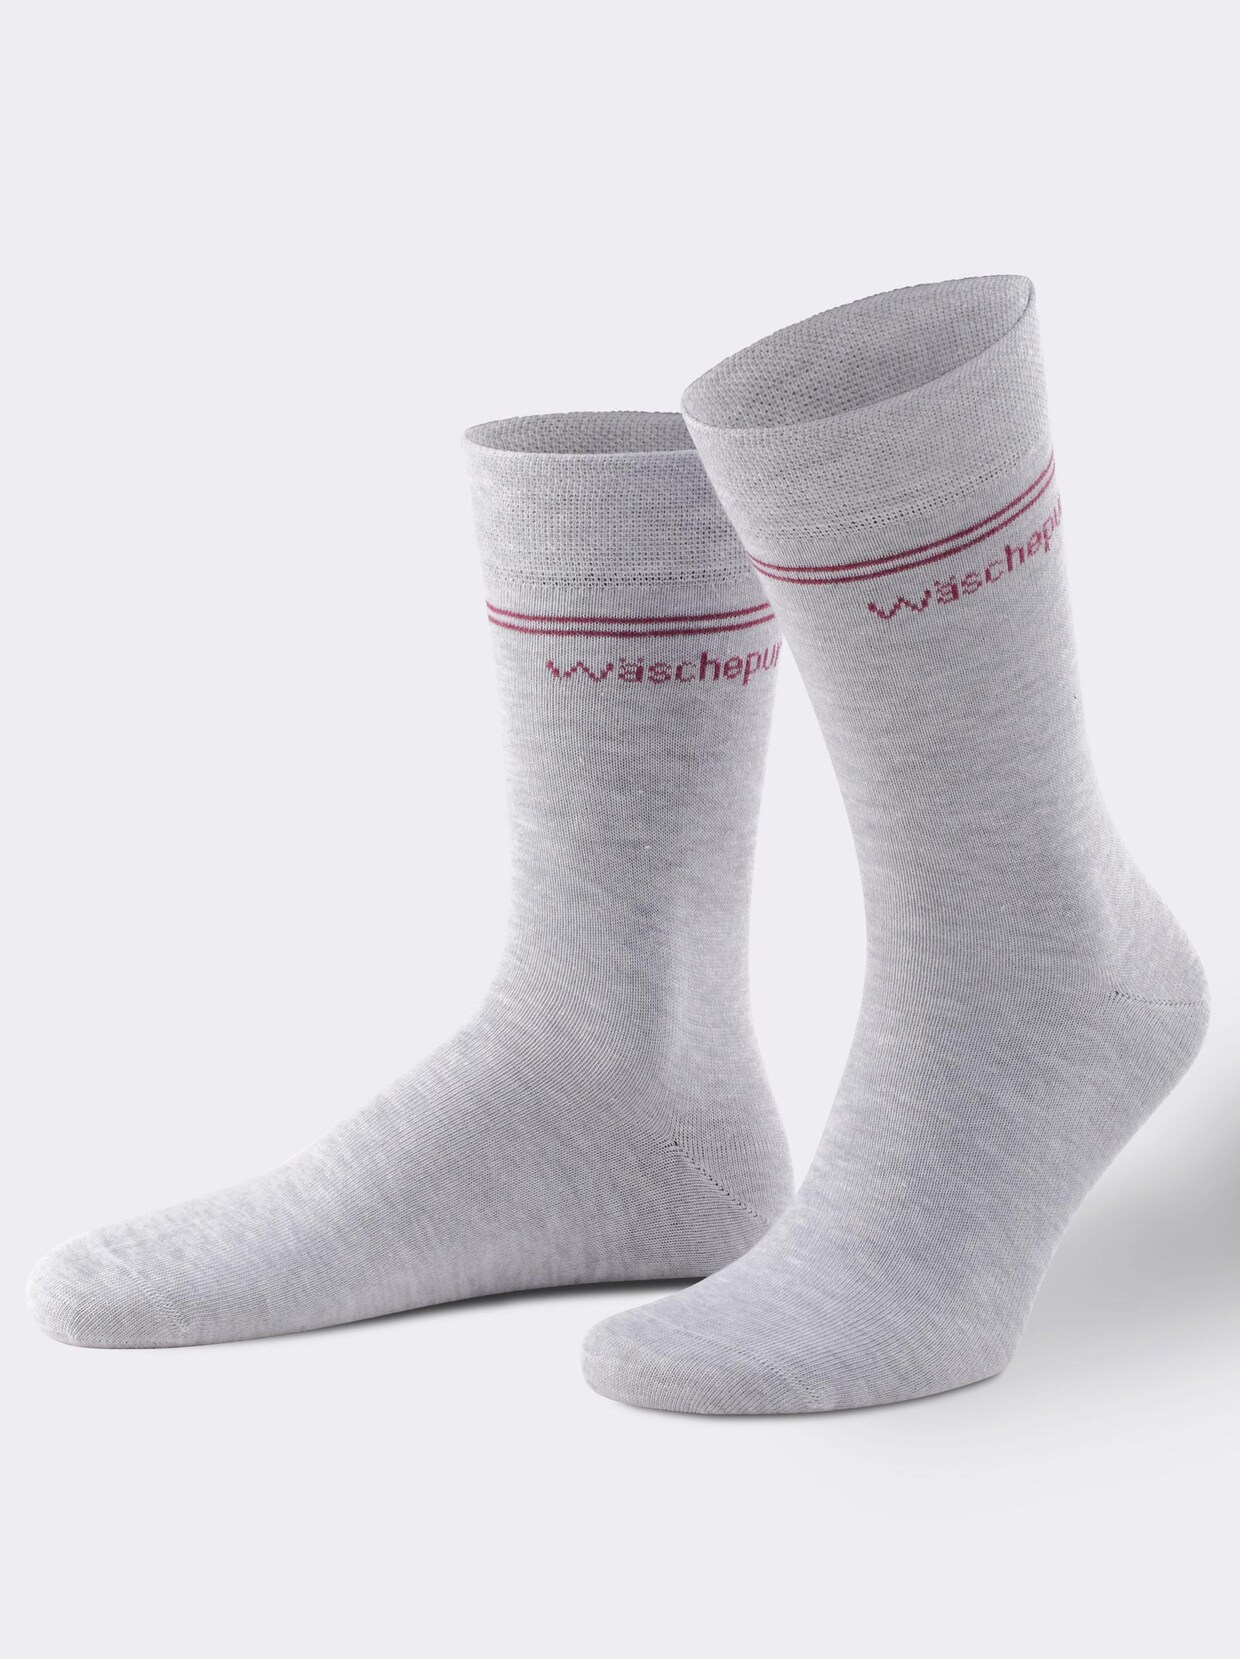 wäschepur Socken - farbig-sortiert